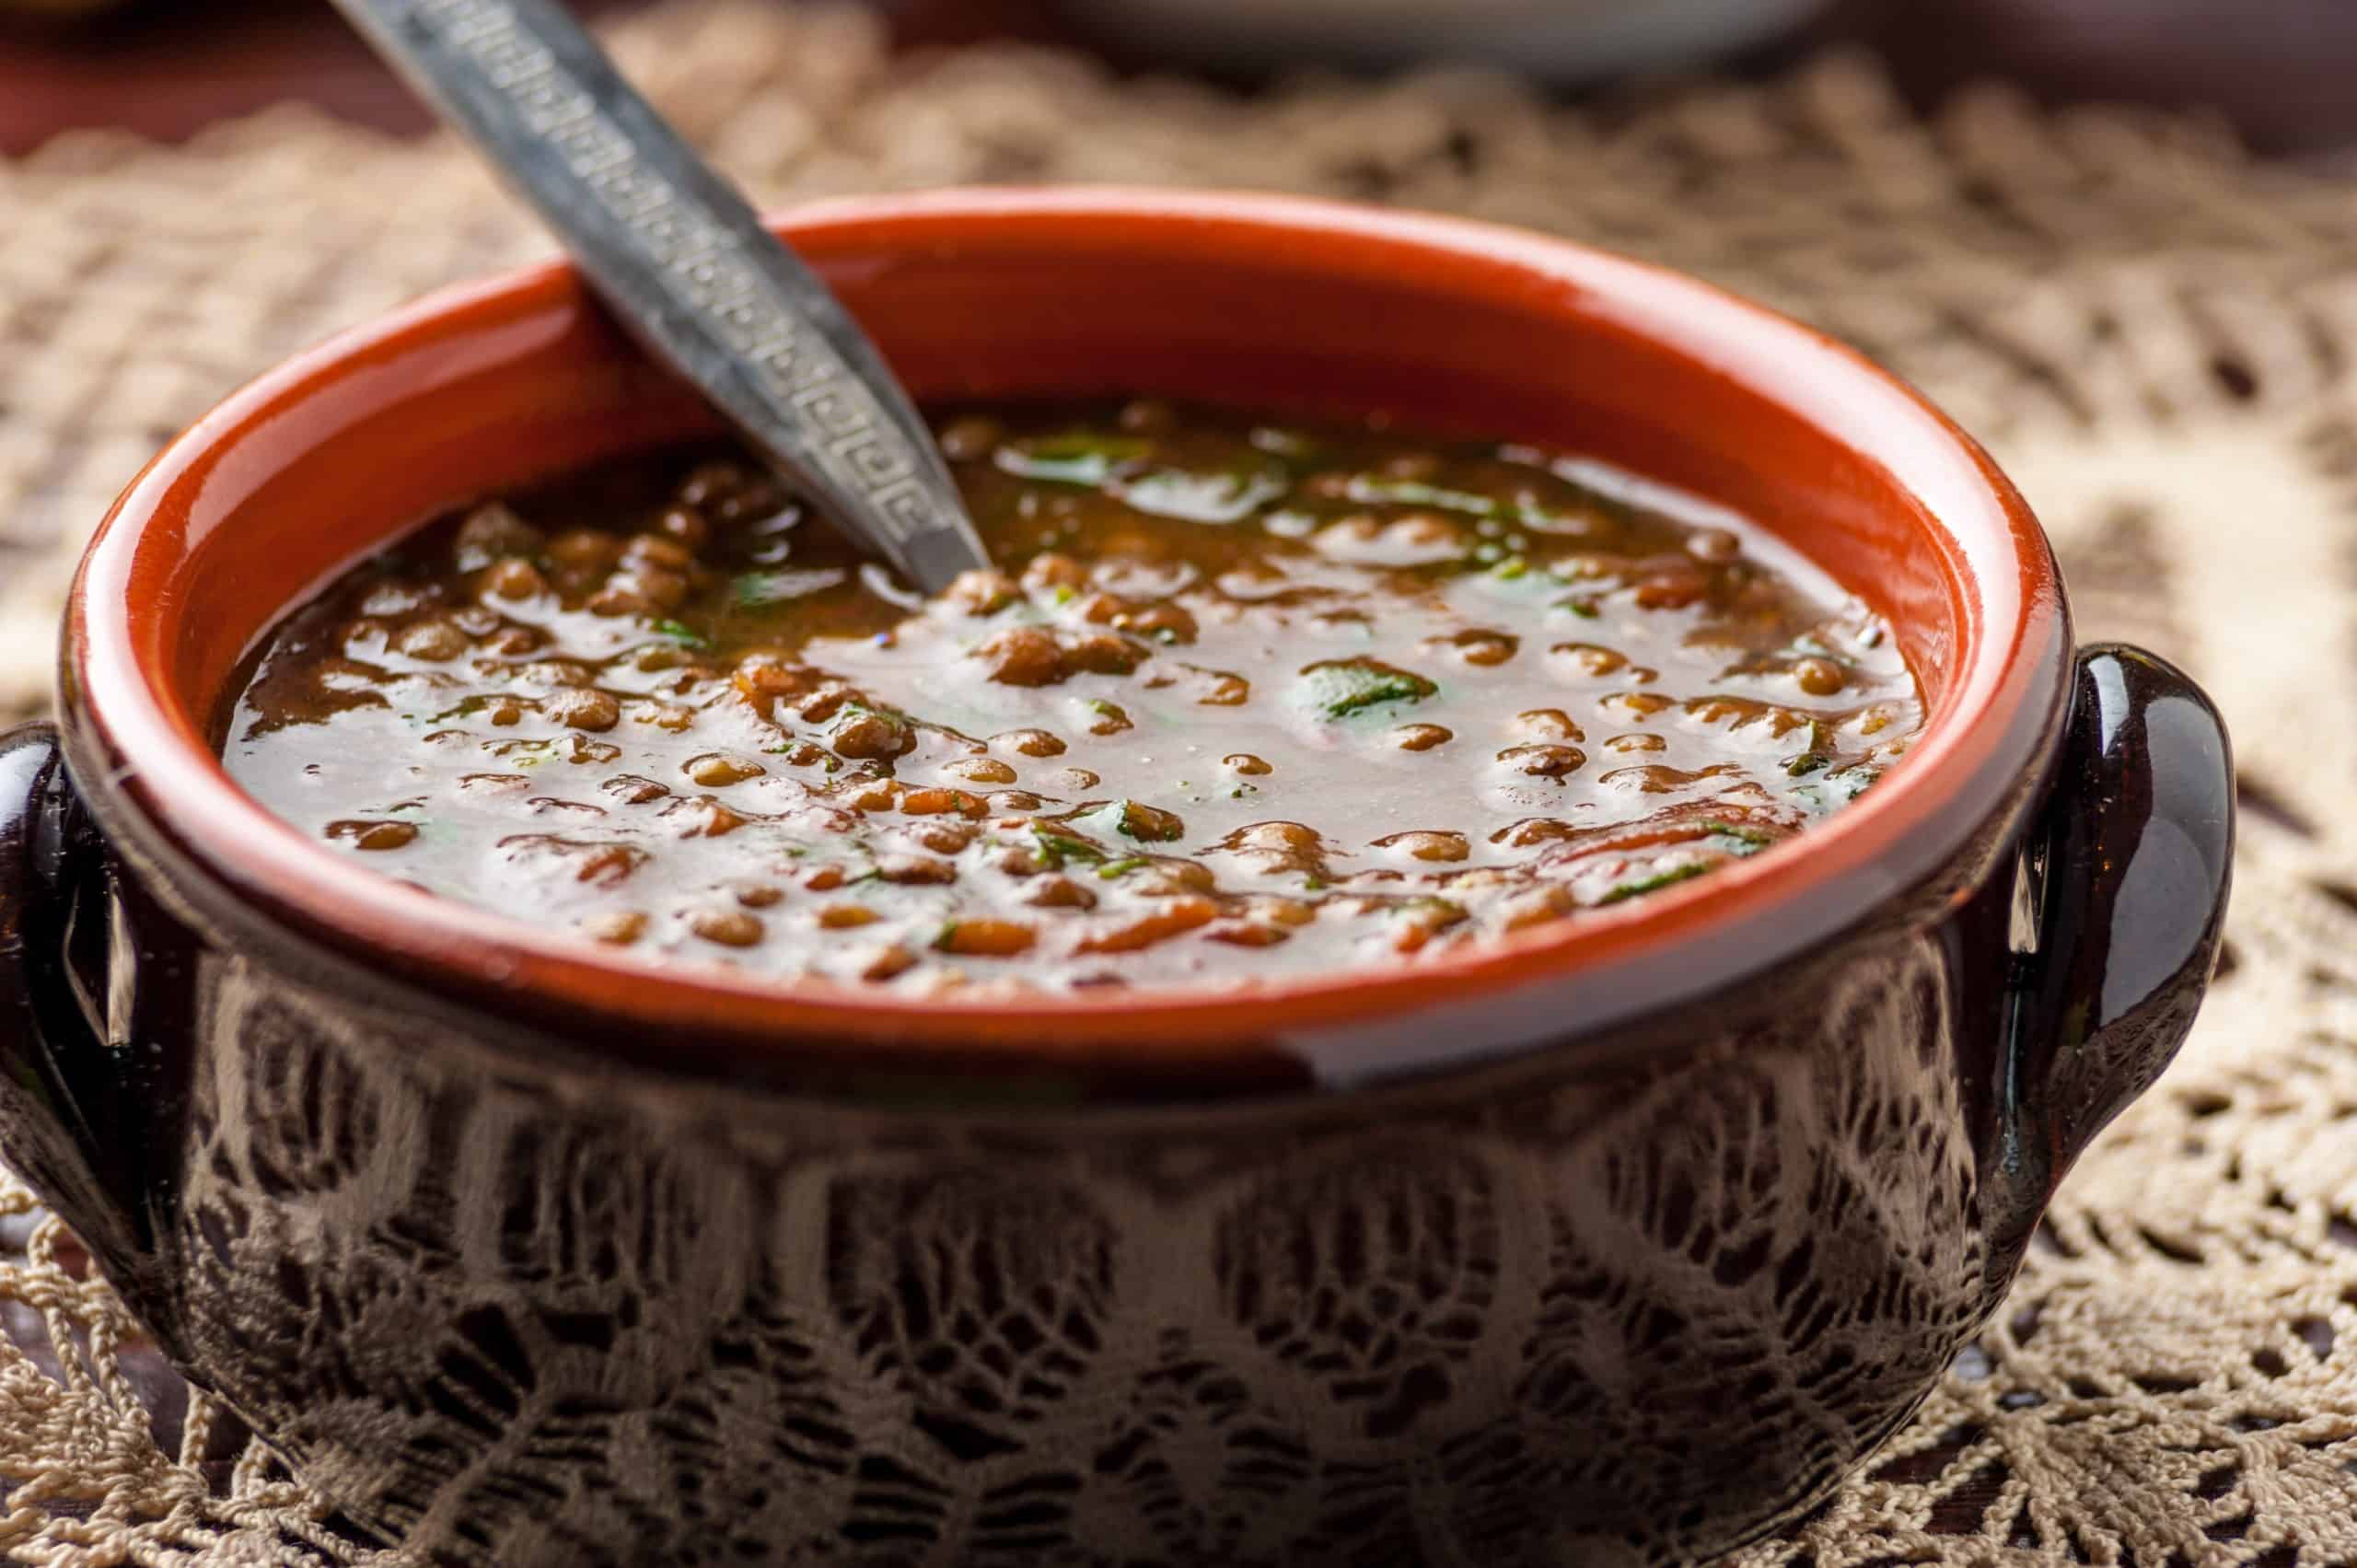 Greek Lentil Soup recipe (Fakes Soupa)